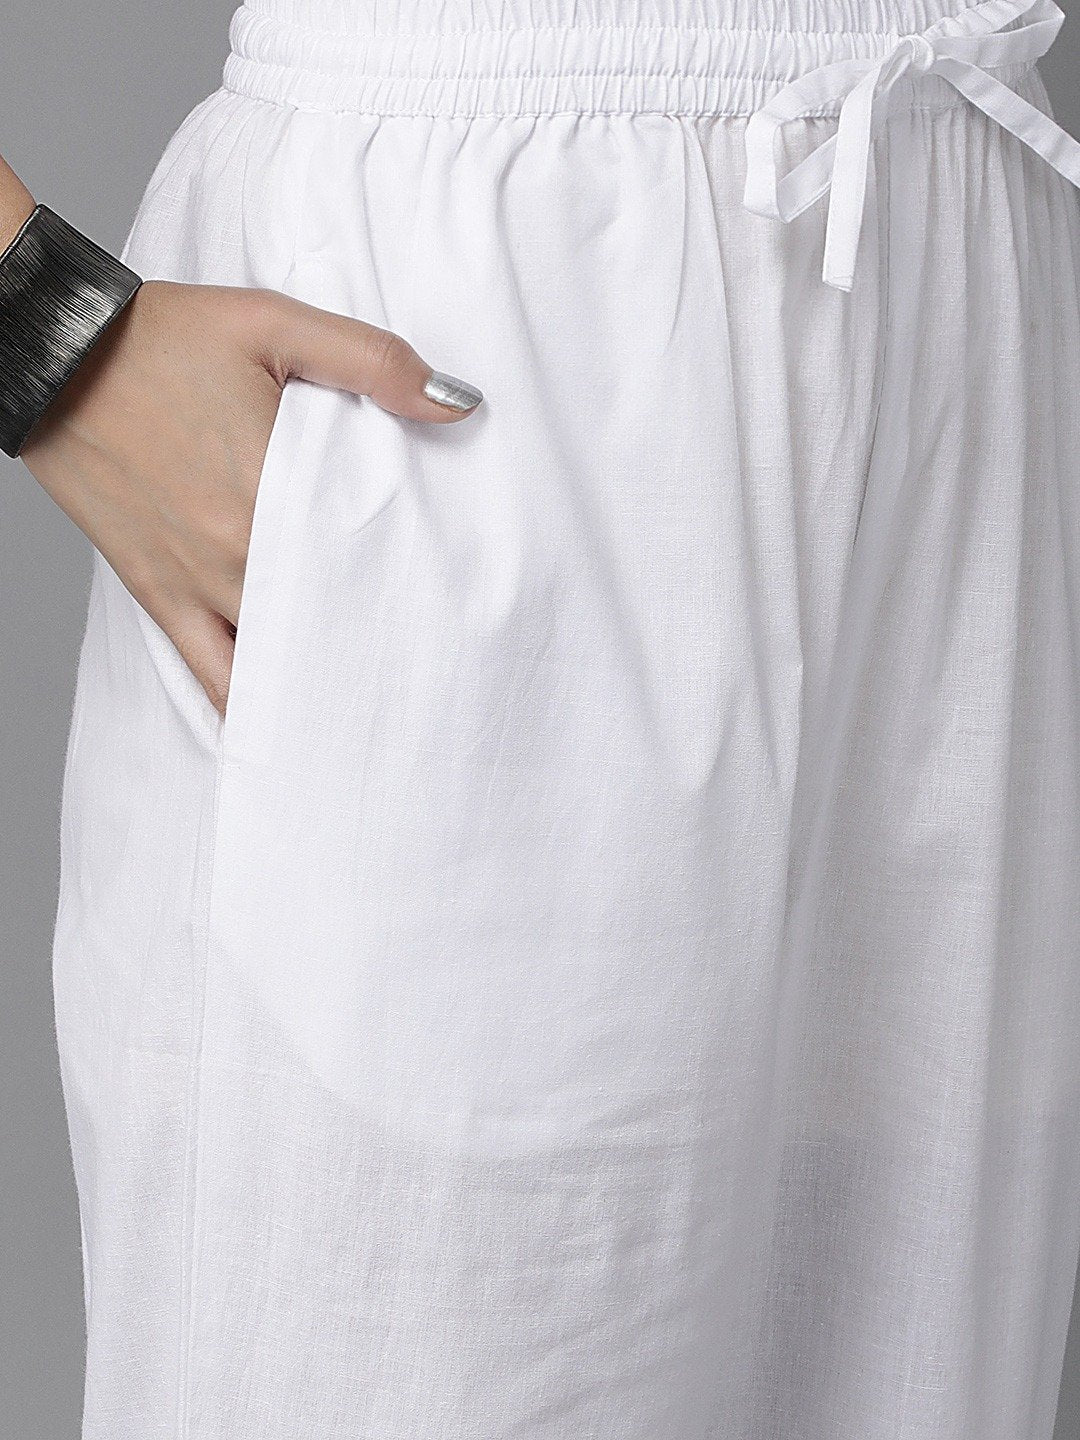 Ishin Women's White Embroidered A-Line Kurta Trouser Dupatta Set